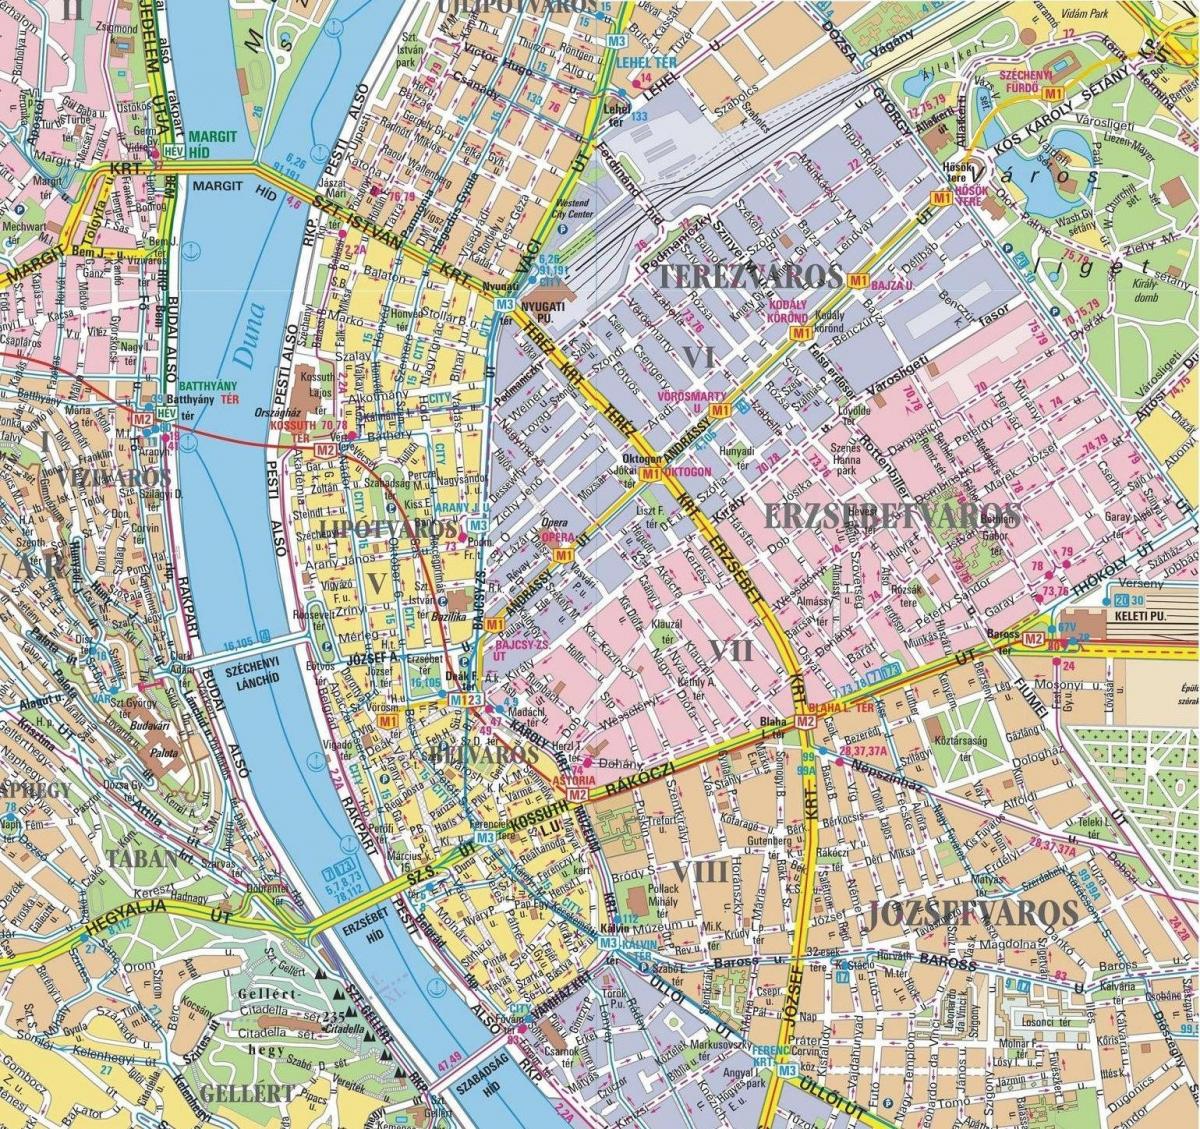 zemljevid okolišev v budimpešti